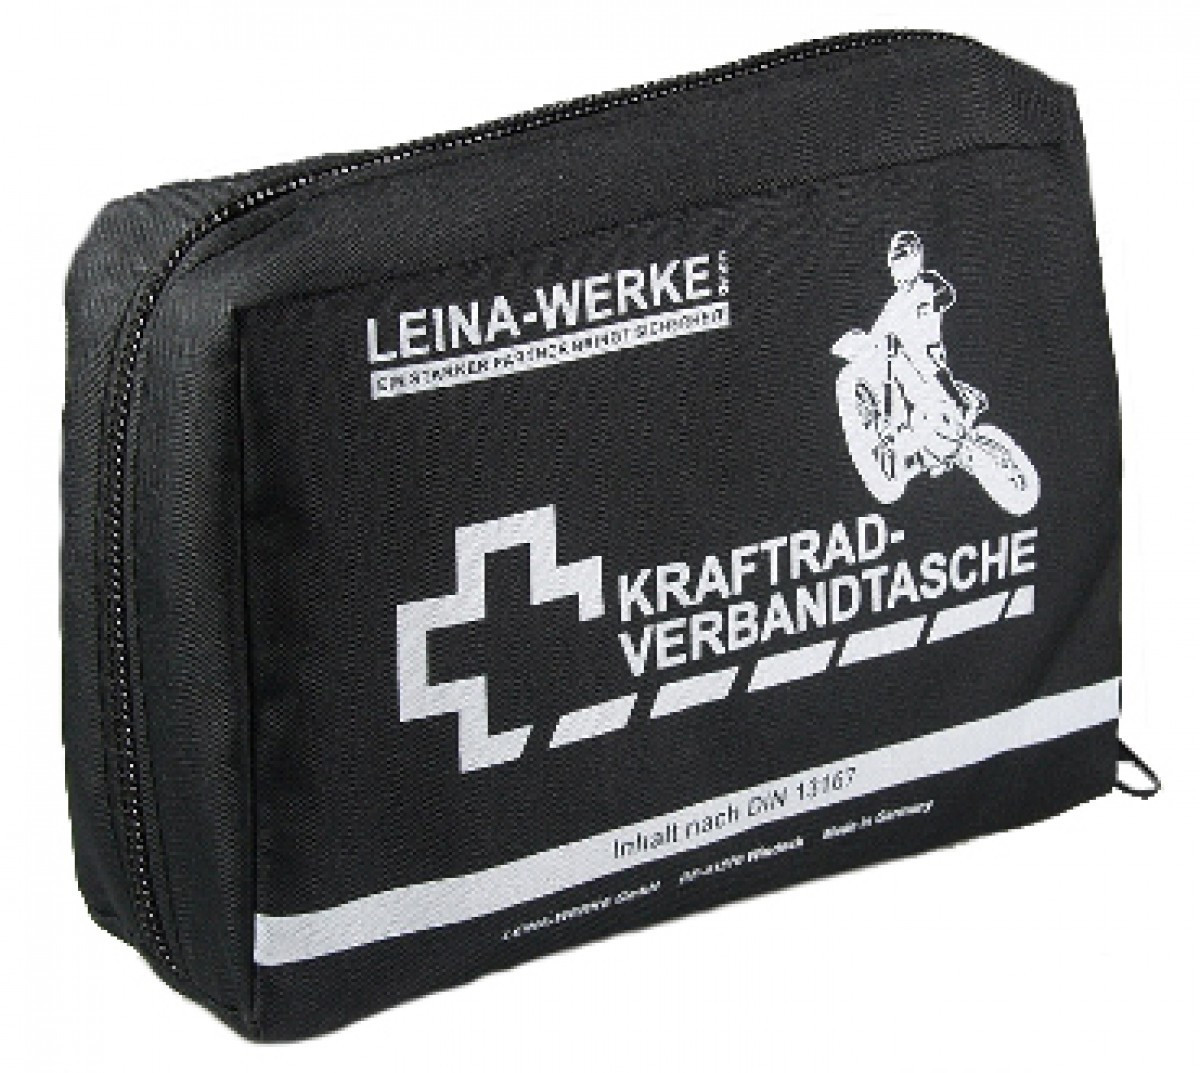 Leina-Werke Kraftrad-Verbandtasche ab 5,70 €